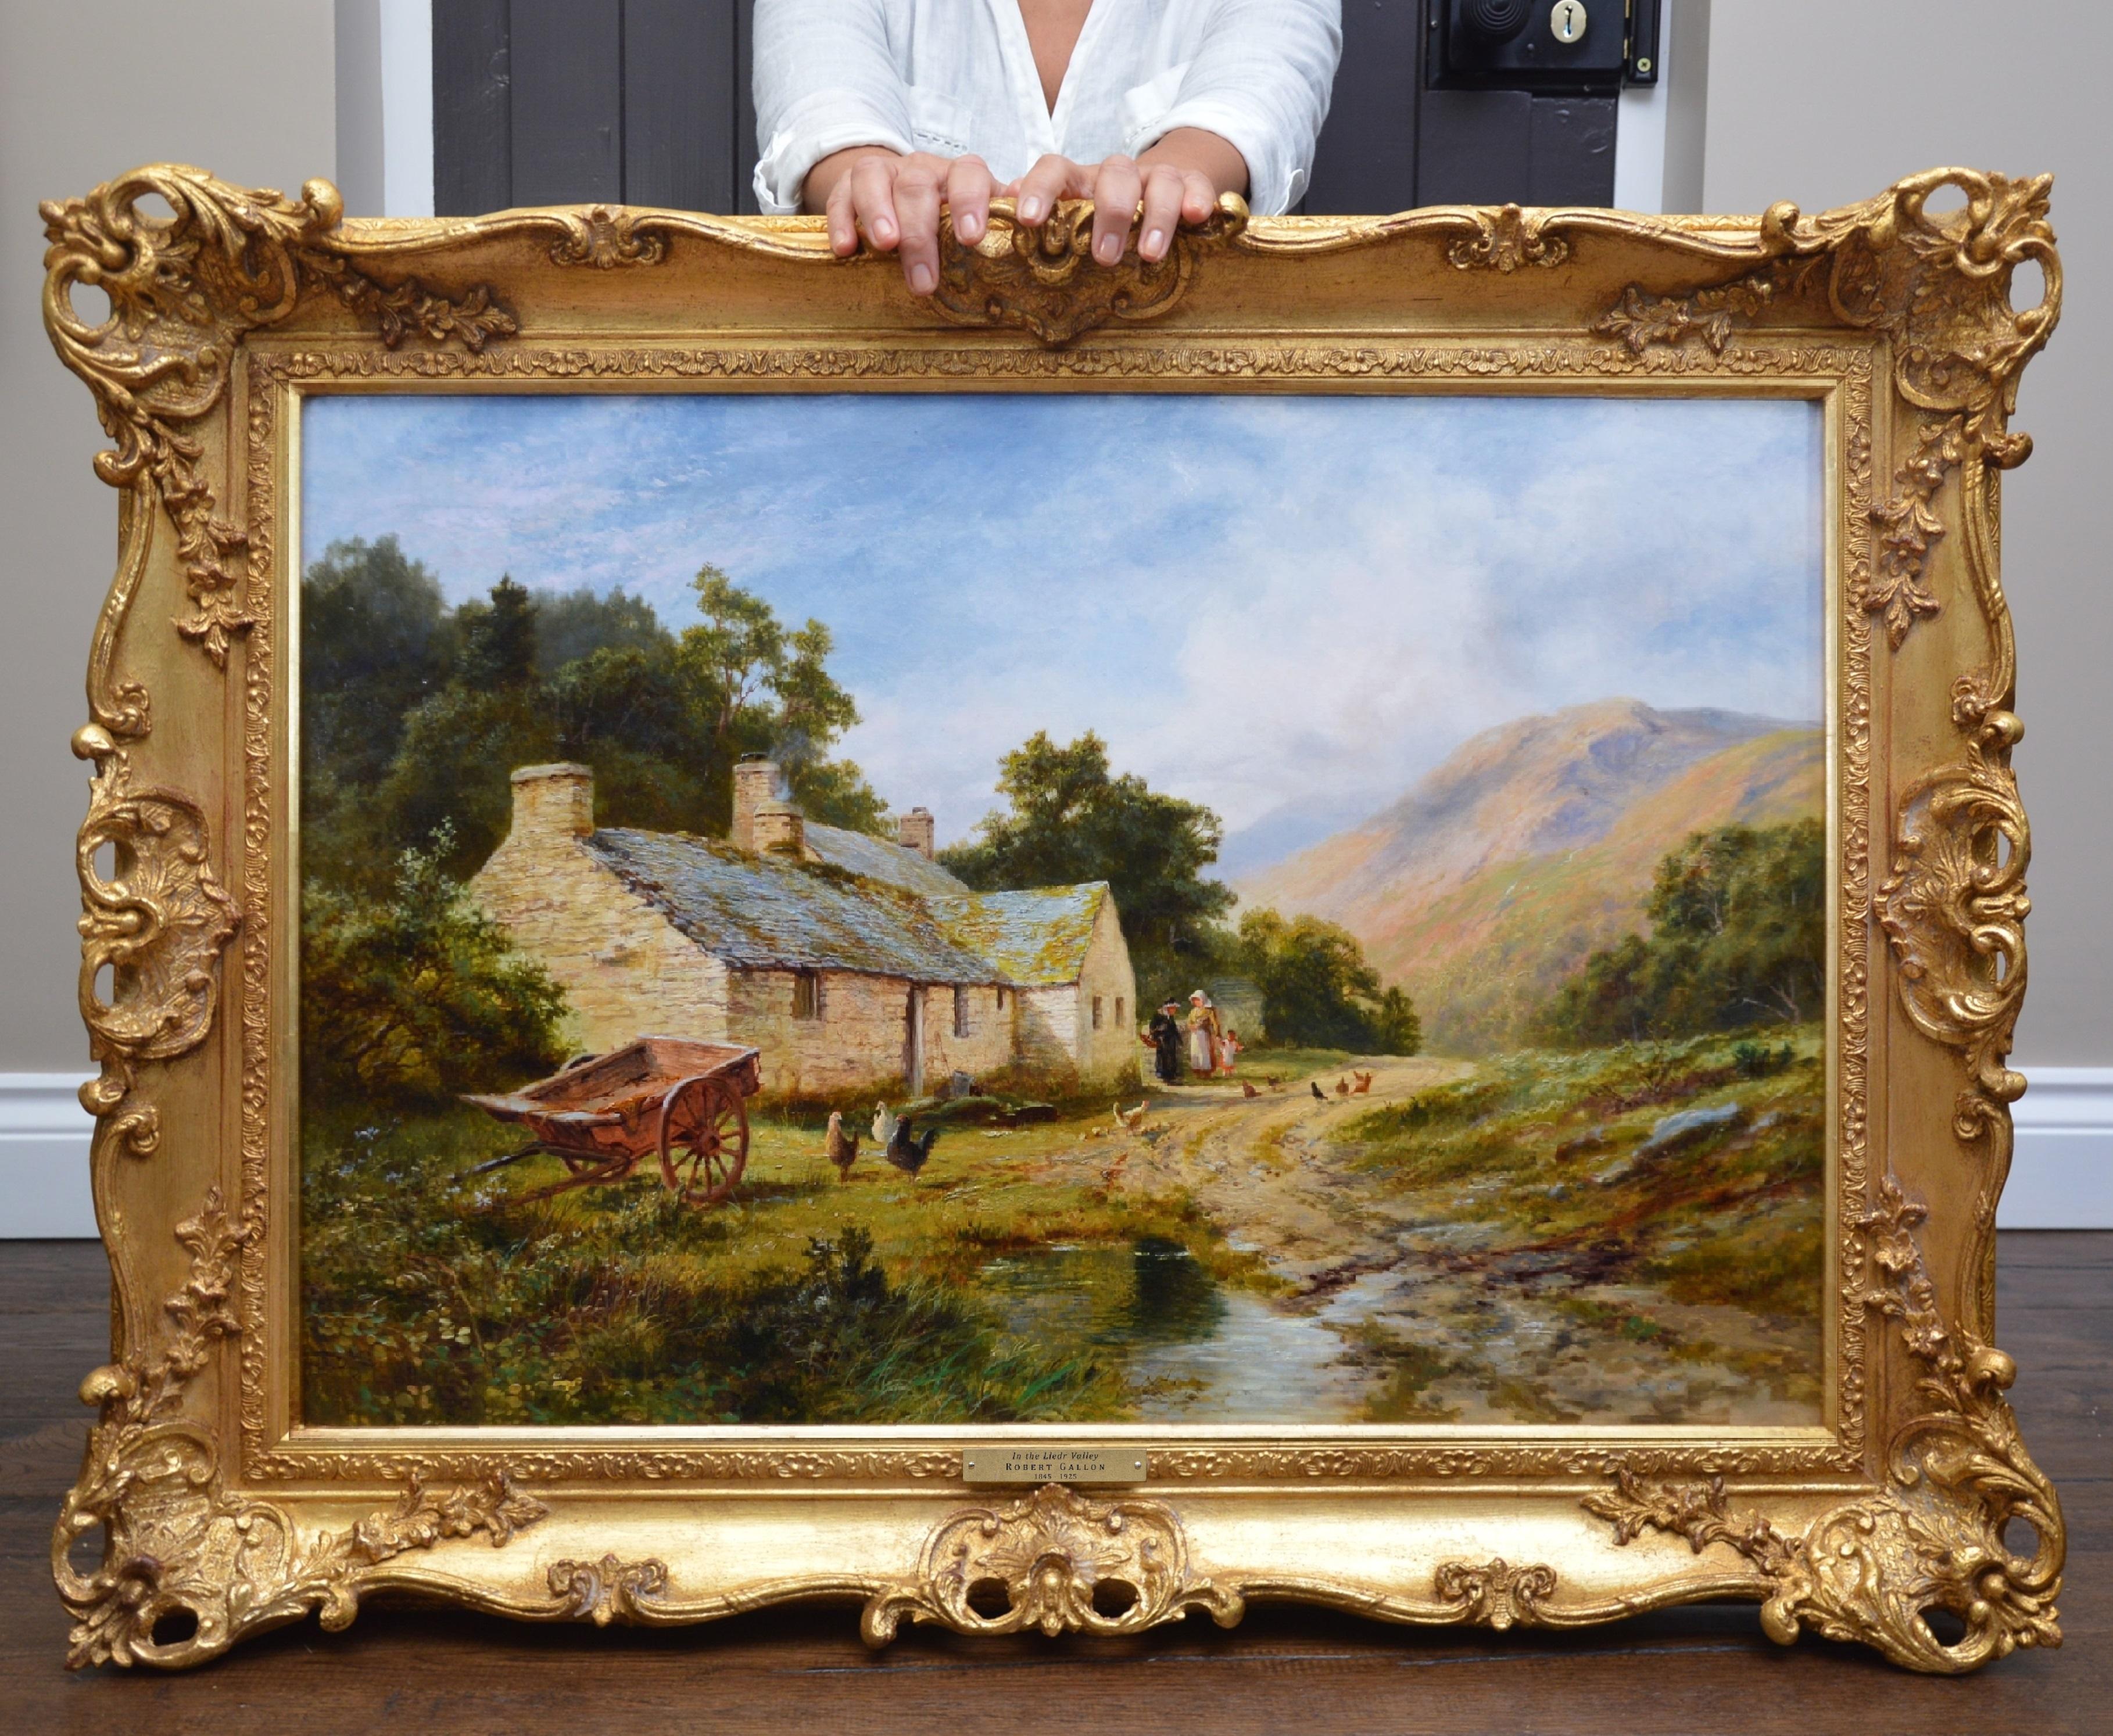 Animal Painting Robert Gallon - La vallée du Lledr - Paysage d'été du 19e siècle - Peinture à l'huile de Snowdonia, Pays de Galles